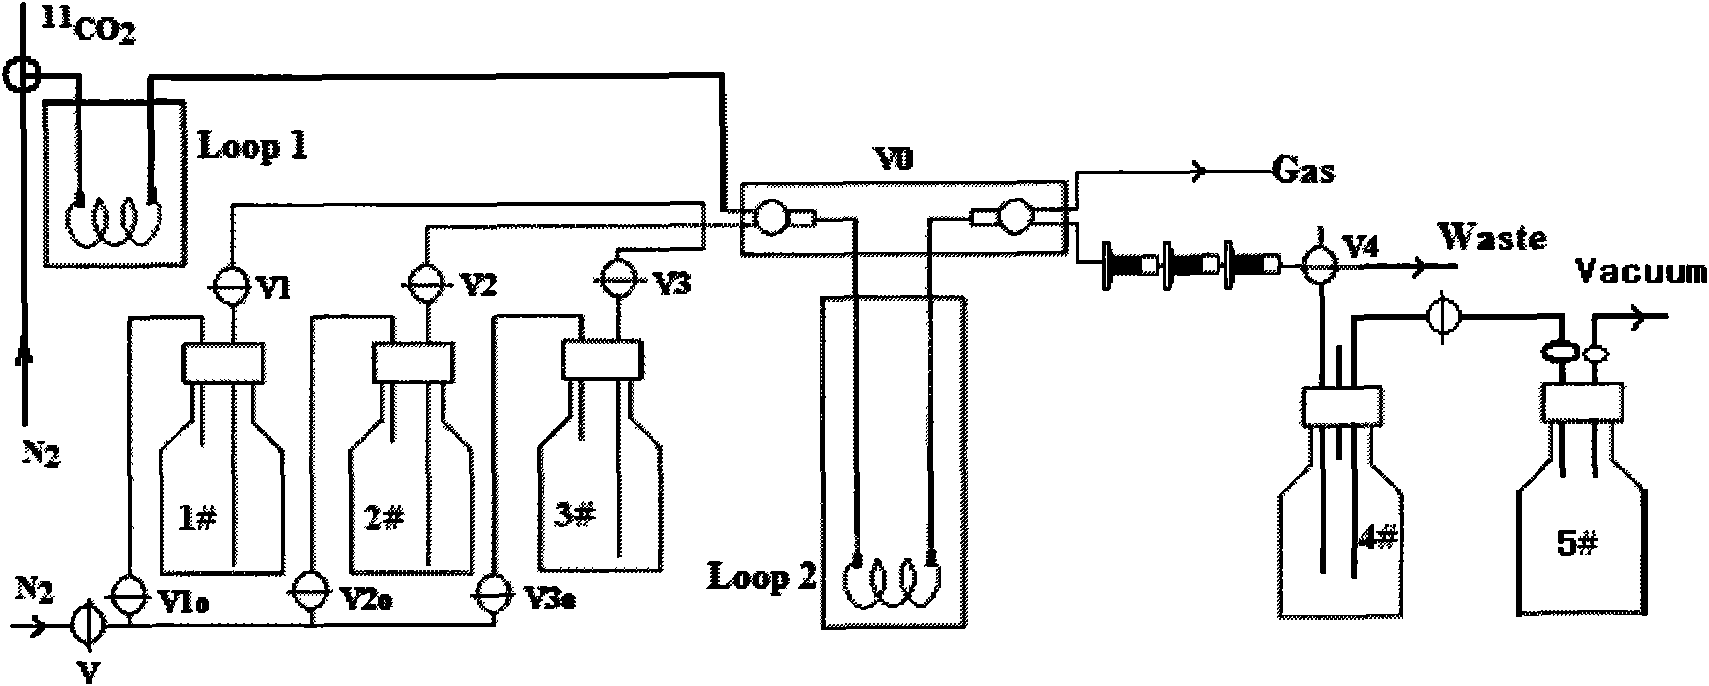 C-acetate preparation method